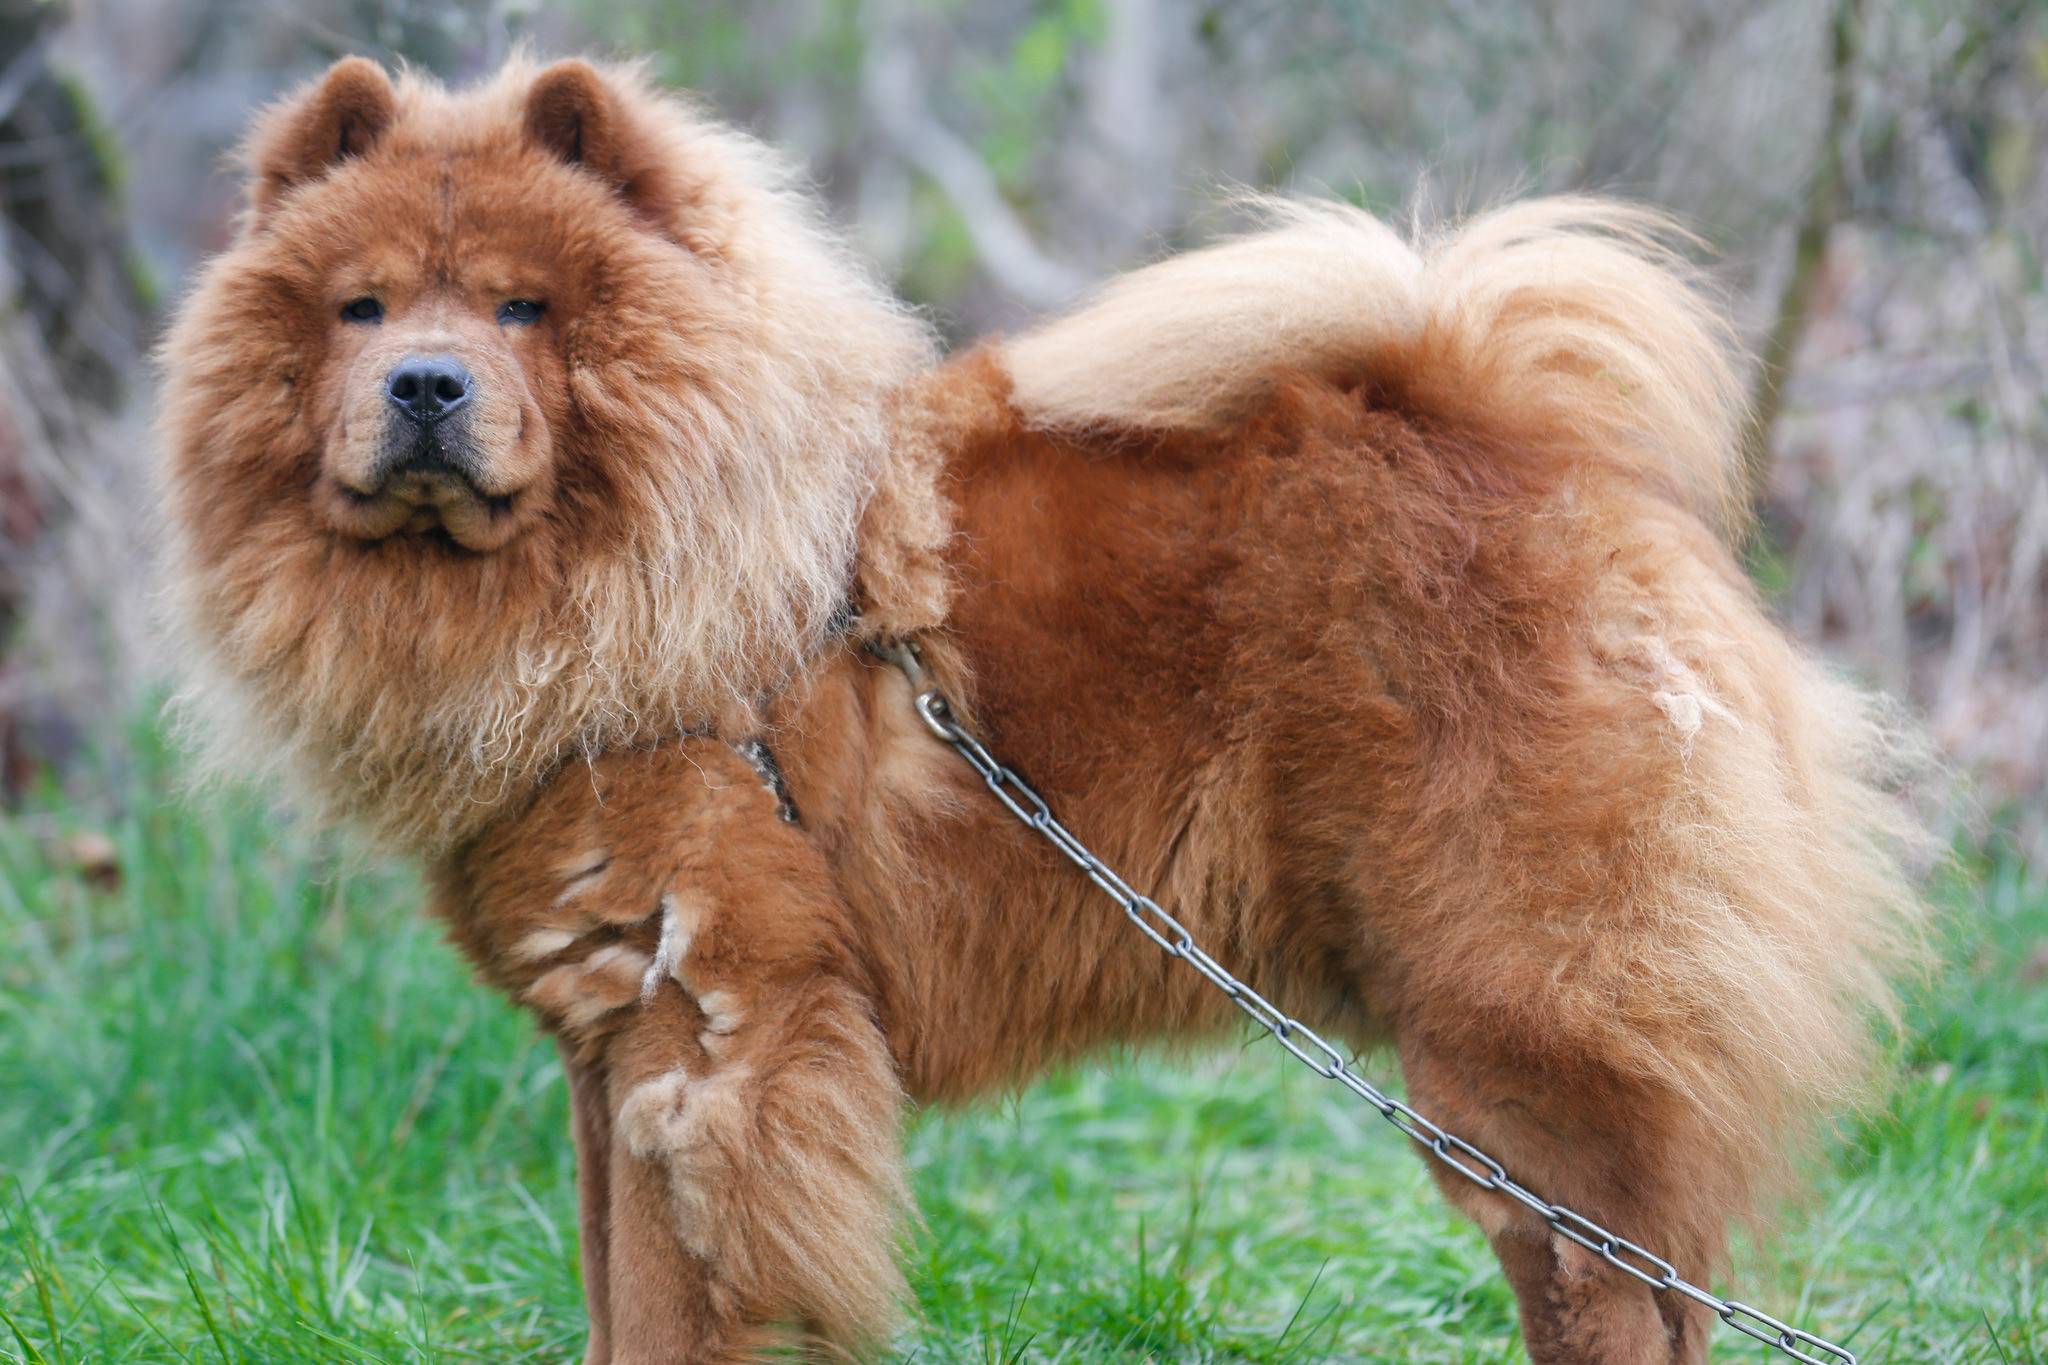 Чау-чау: подробное описание породы собак (с фото и видео)